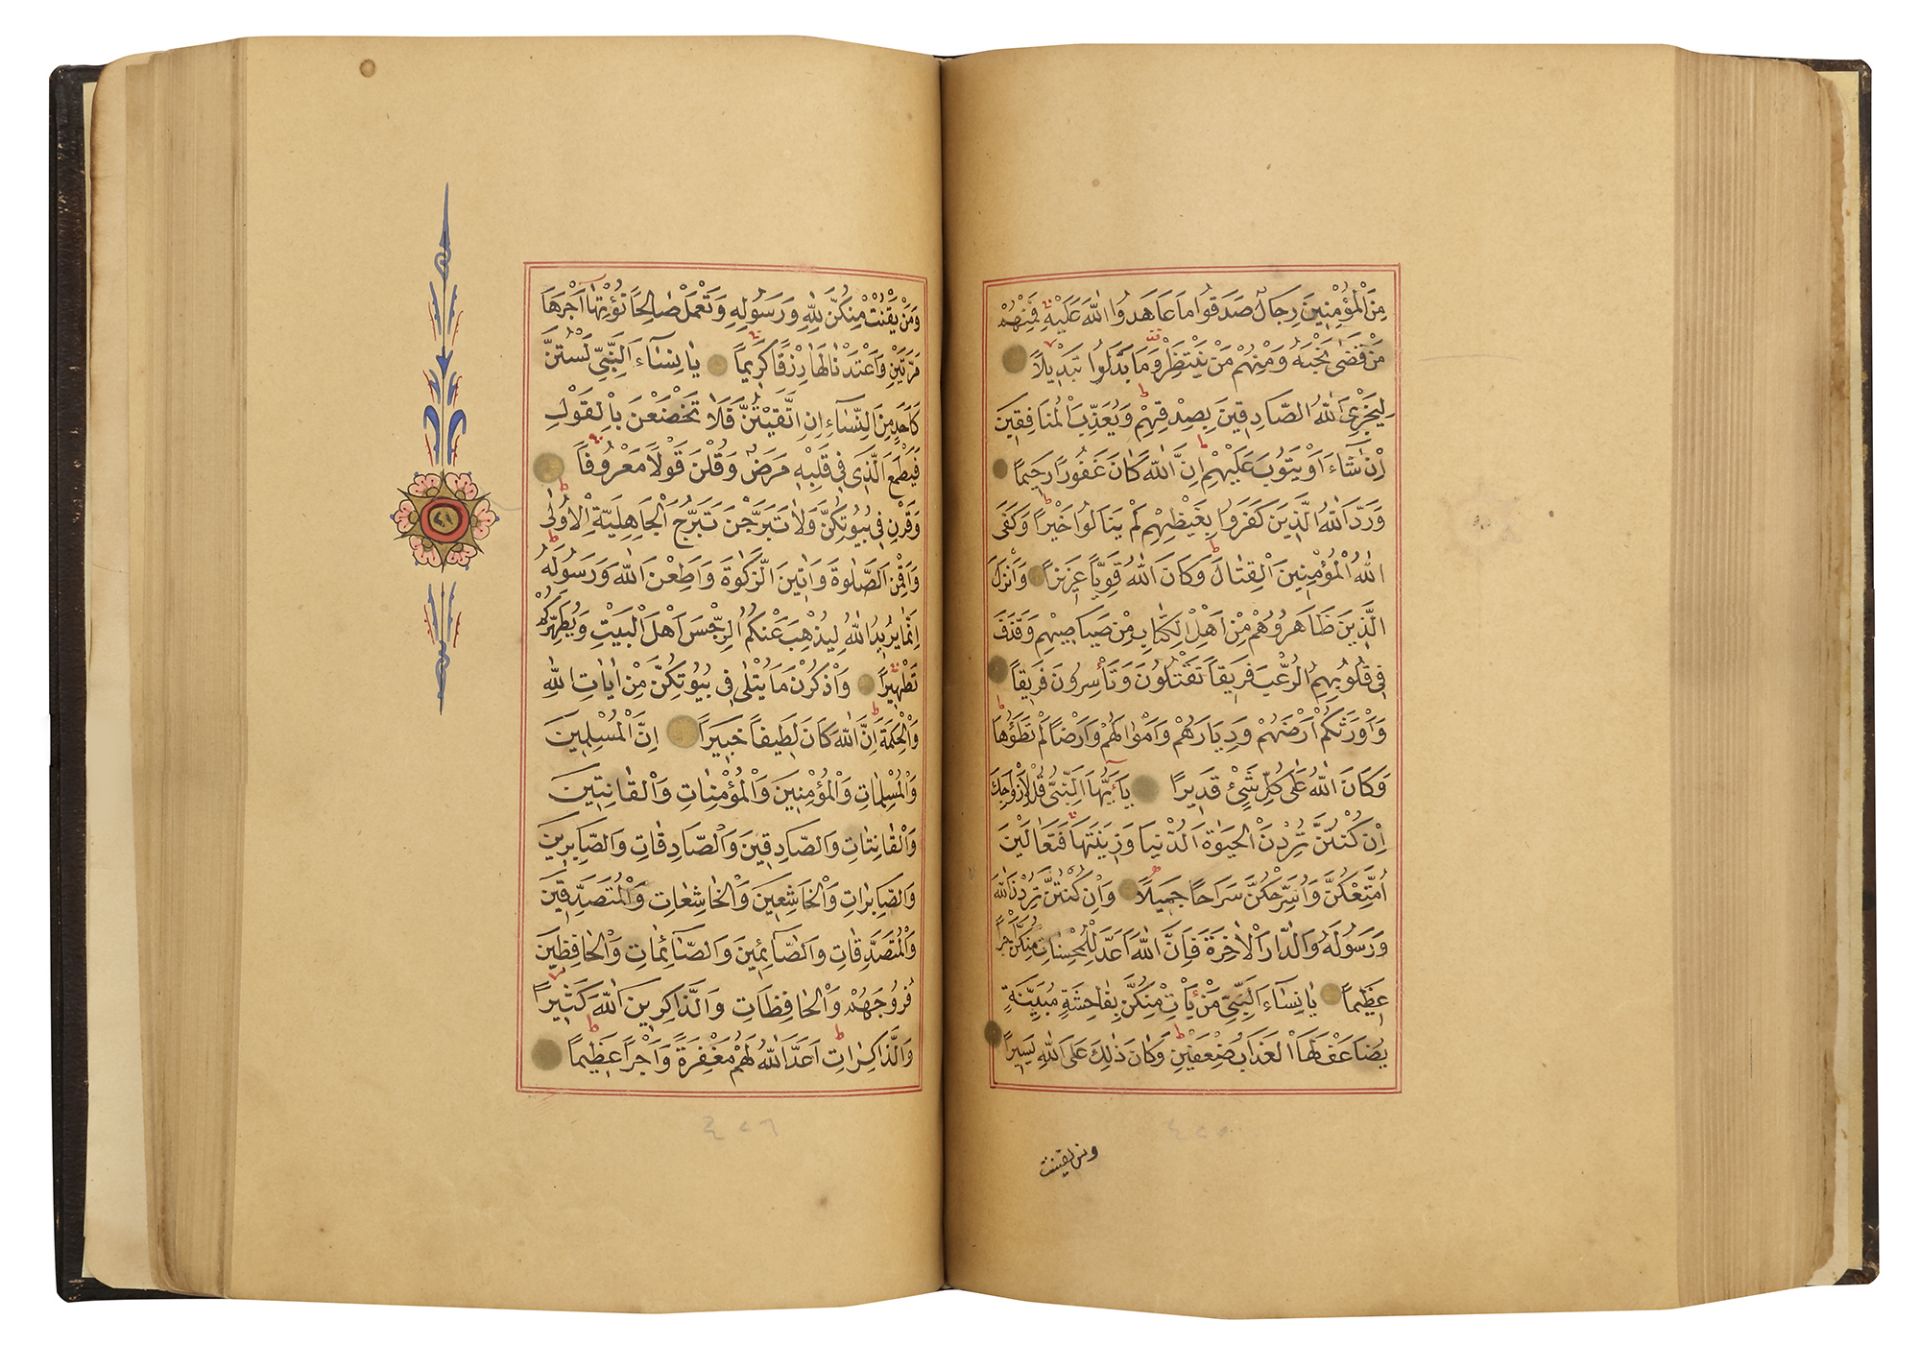 A FINE OTTOMAN QURAN, TURKEY, EDIRNE, WRITTEN BY HUSSEIN AL-HUSNA IBN AHMED AL-ADRUNI, DATED 1287 AH - Image 3 of 4